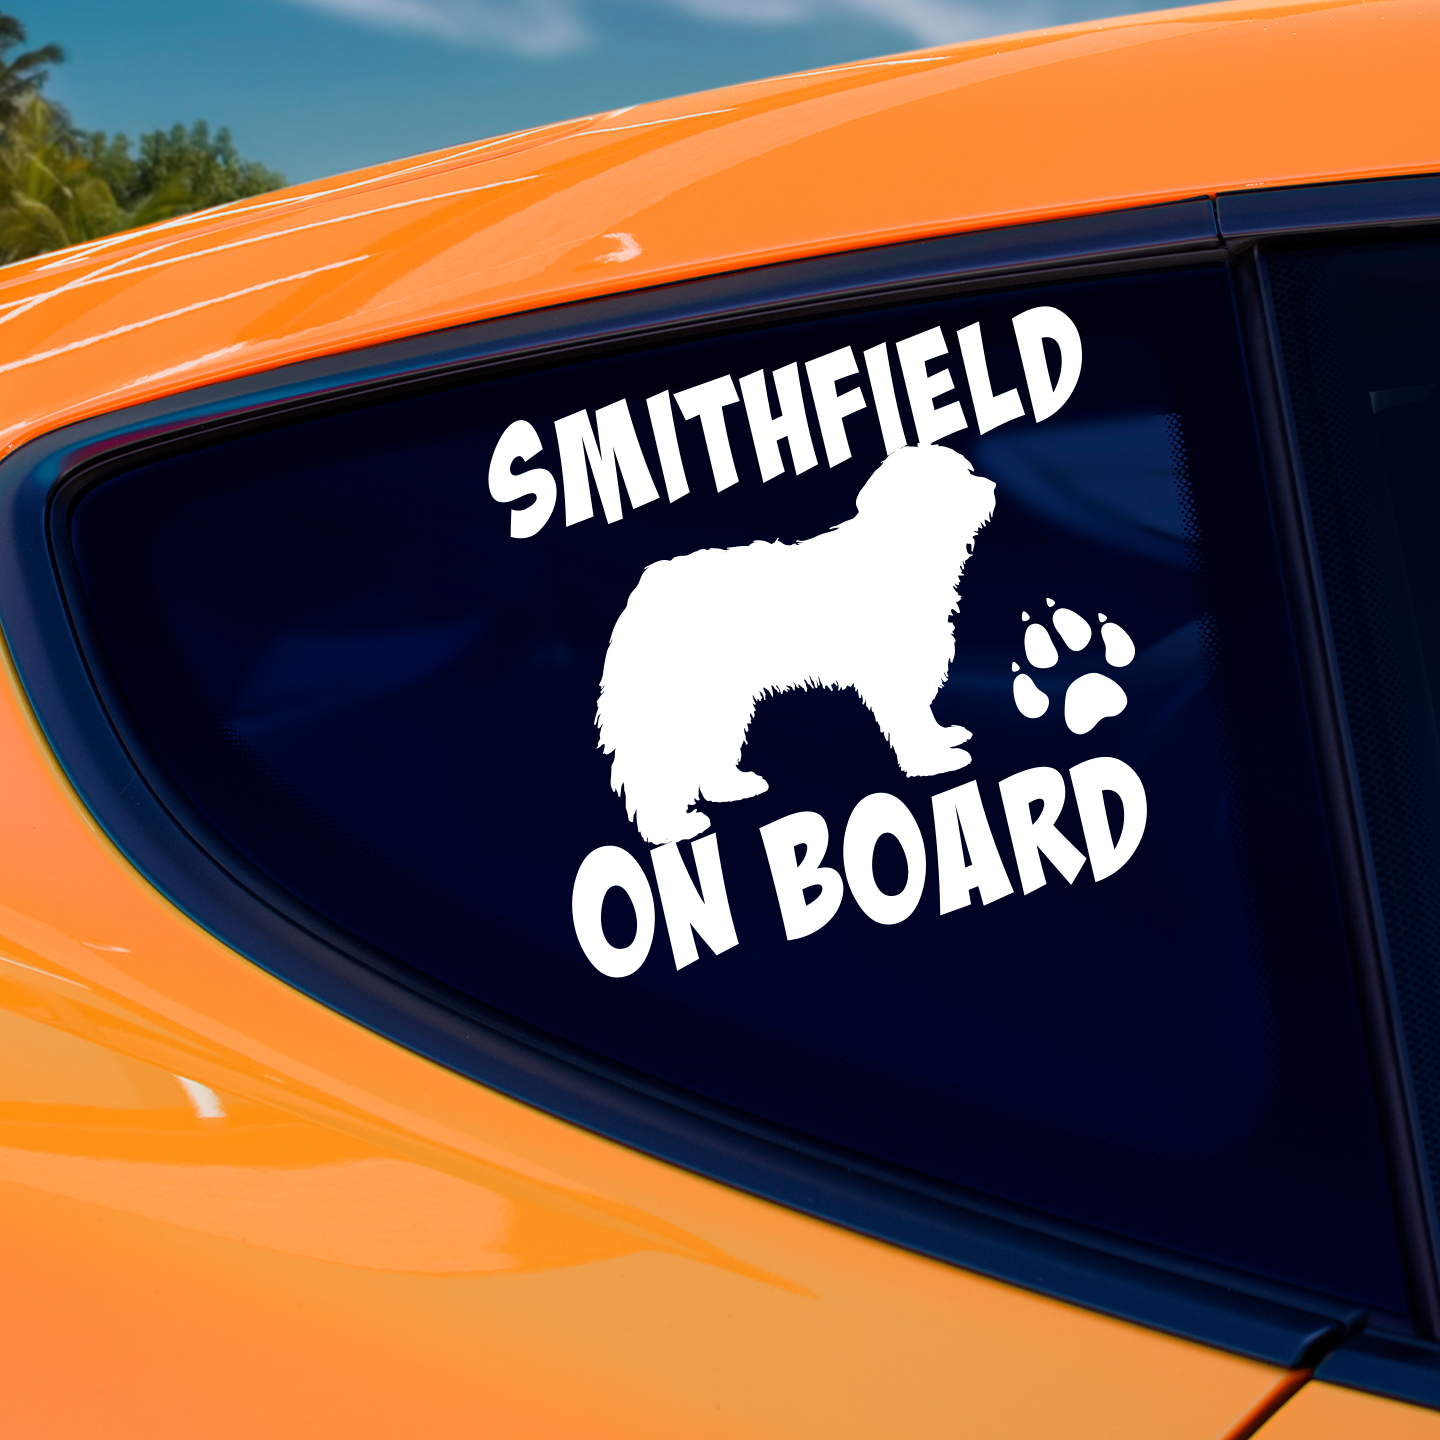 Smithfield On Board Sticker